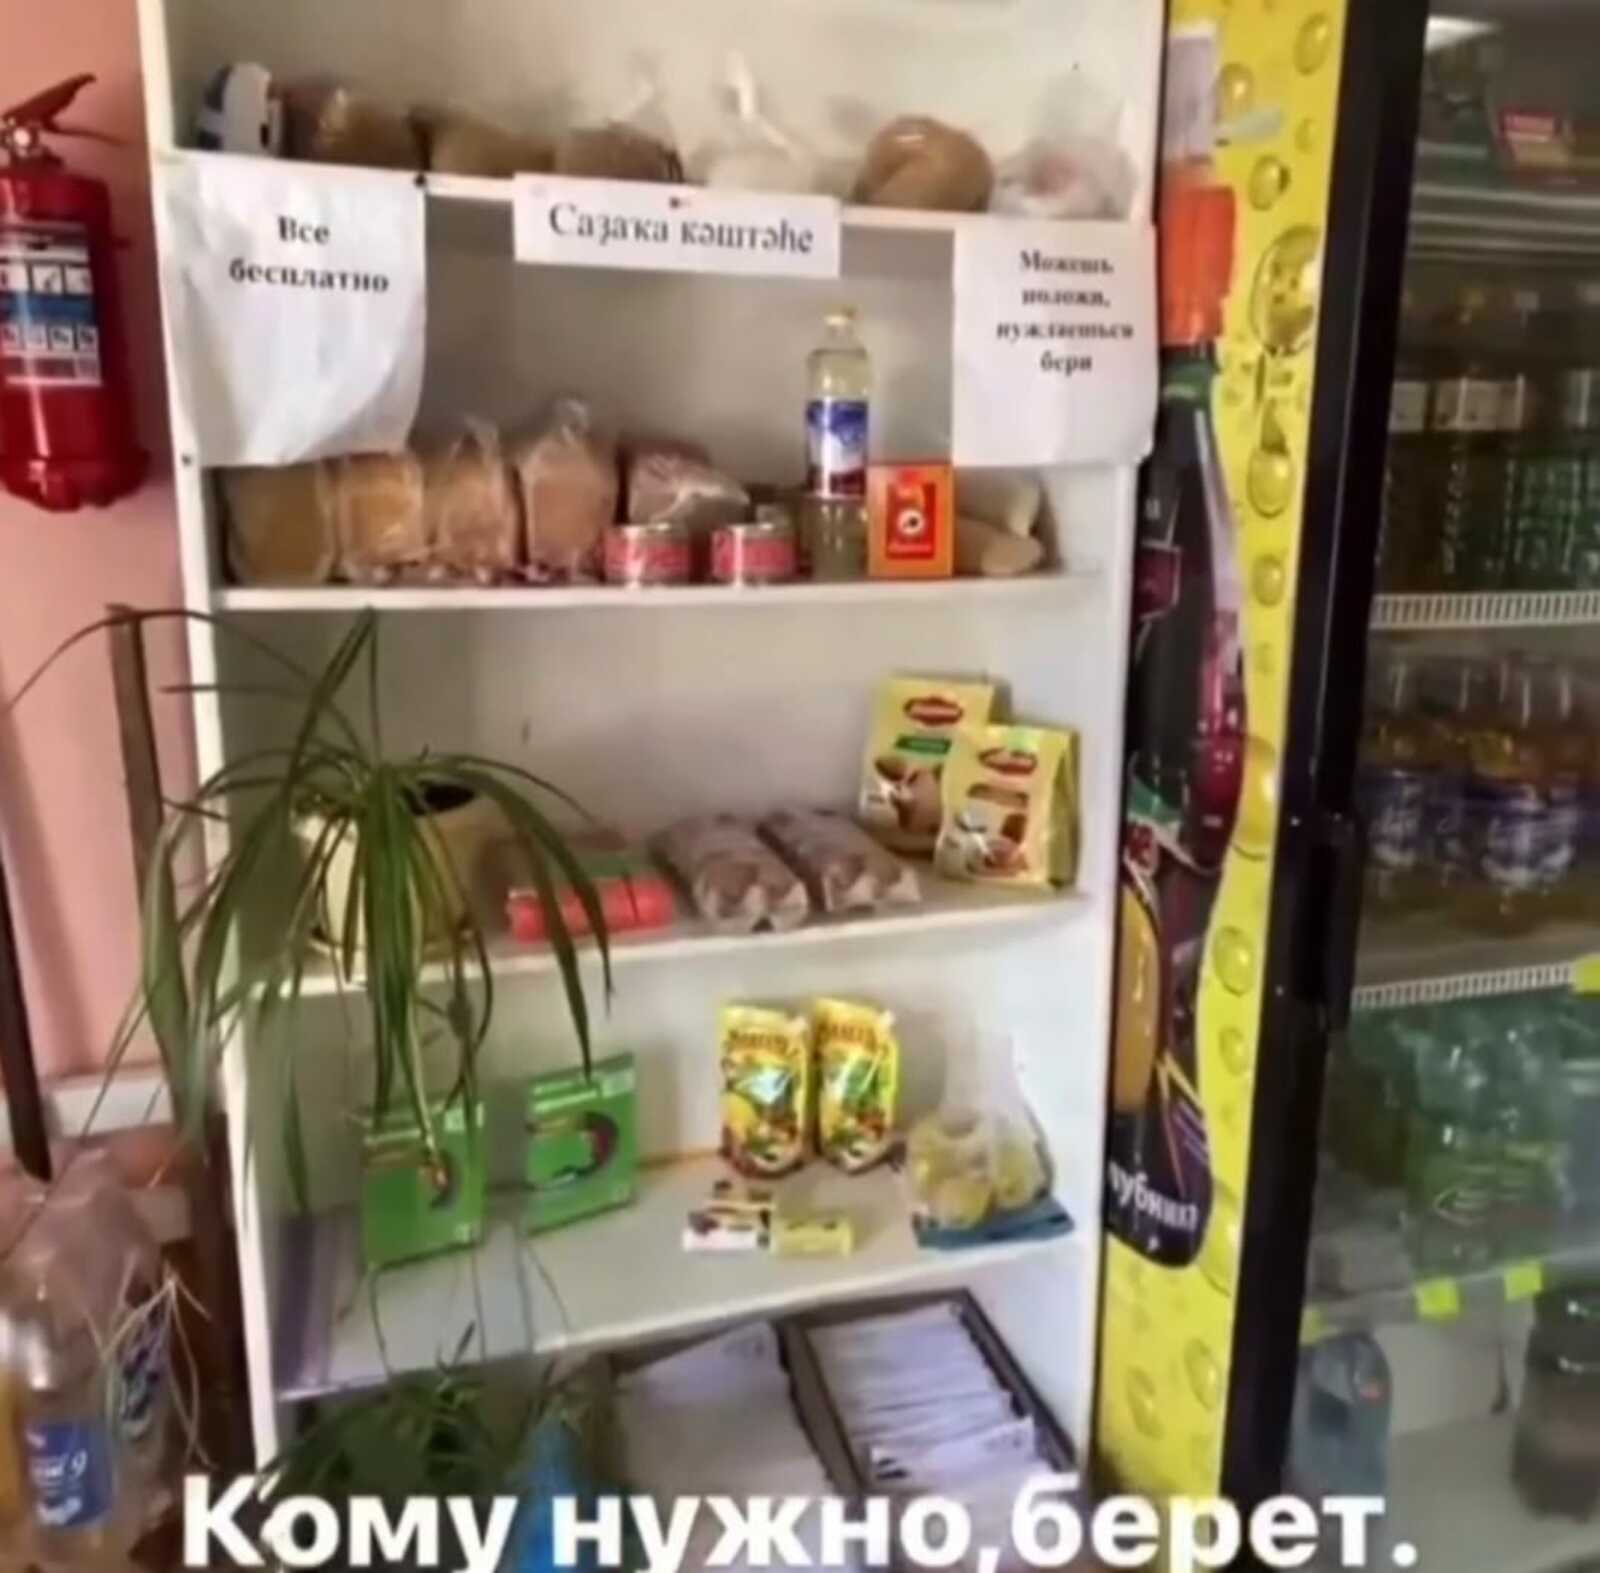 Для помощи нуждающимся: В Башкирии в магазине есть прилавок с бесплатными продуктами